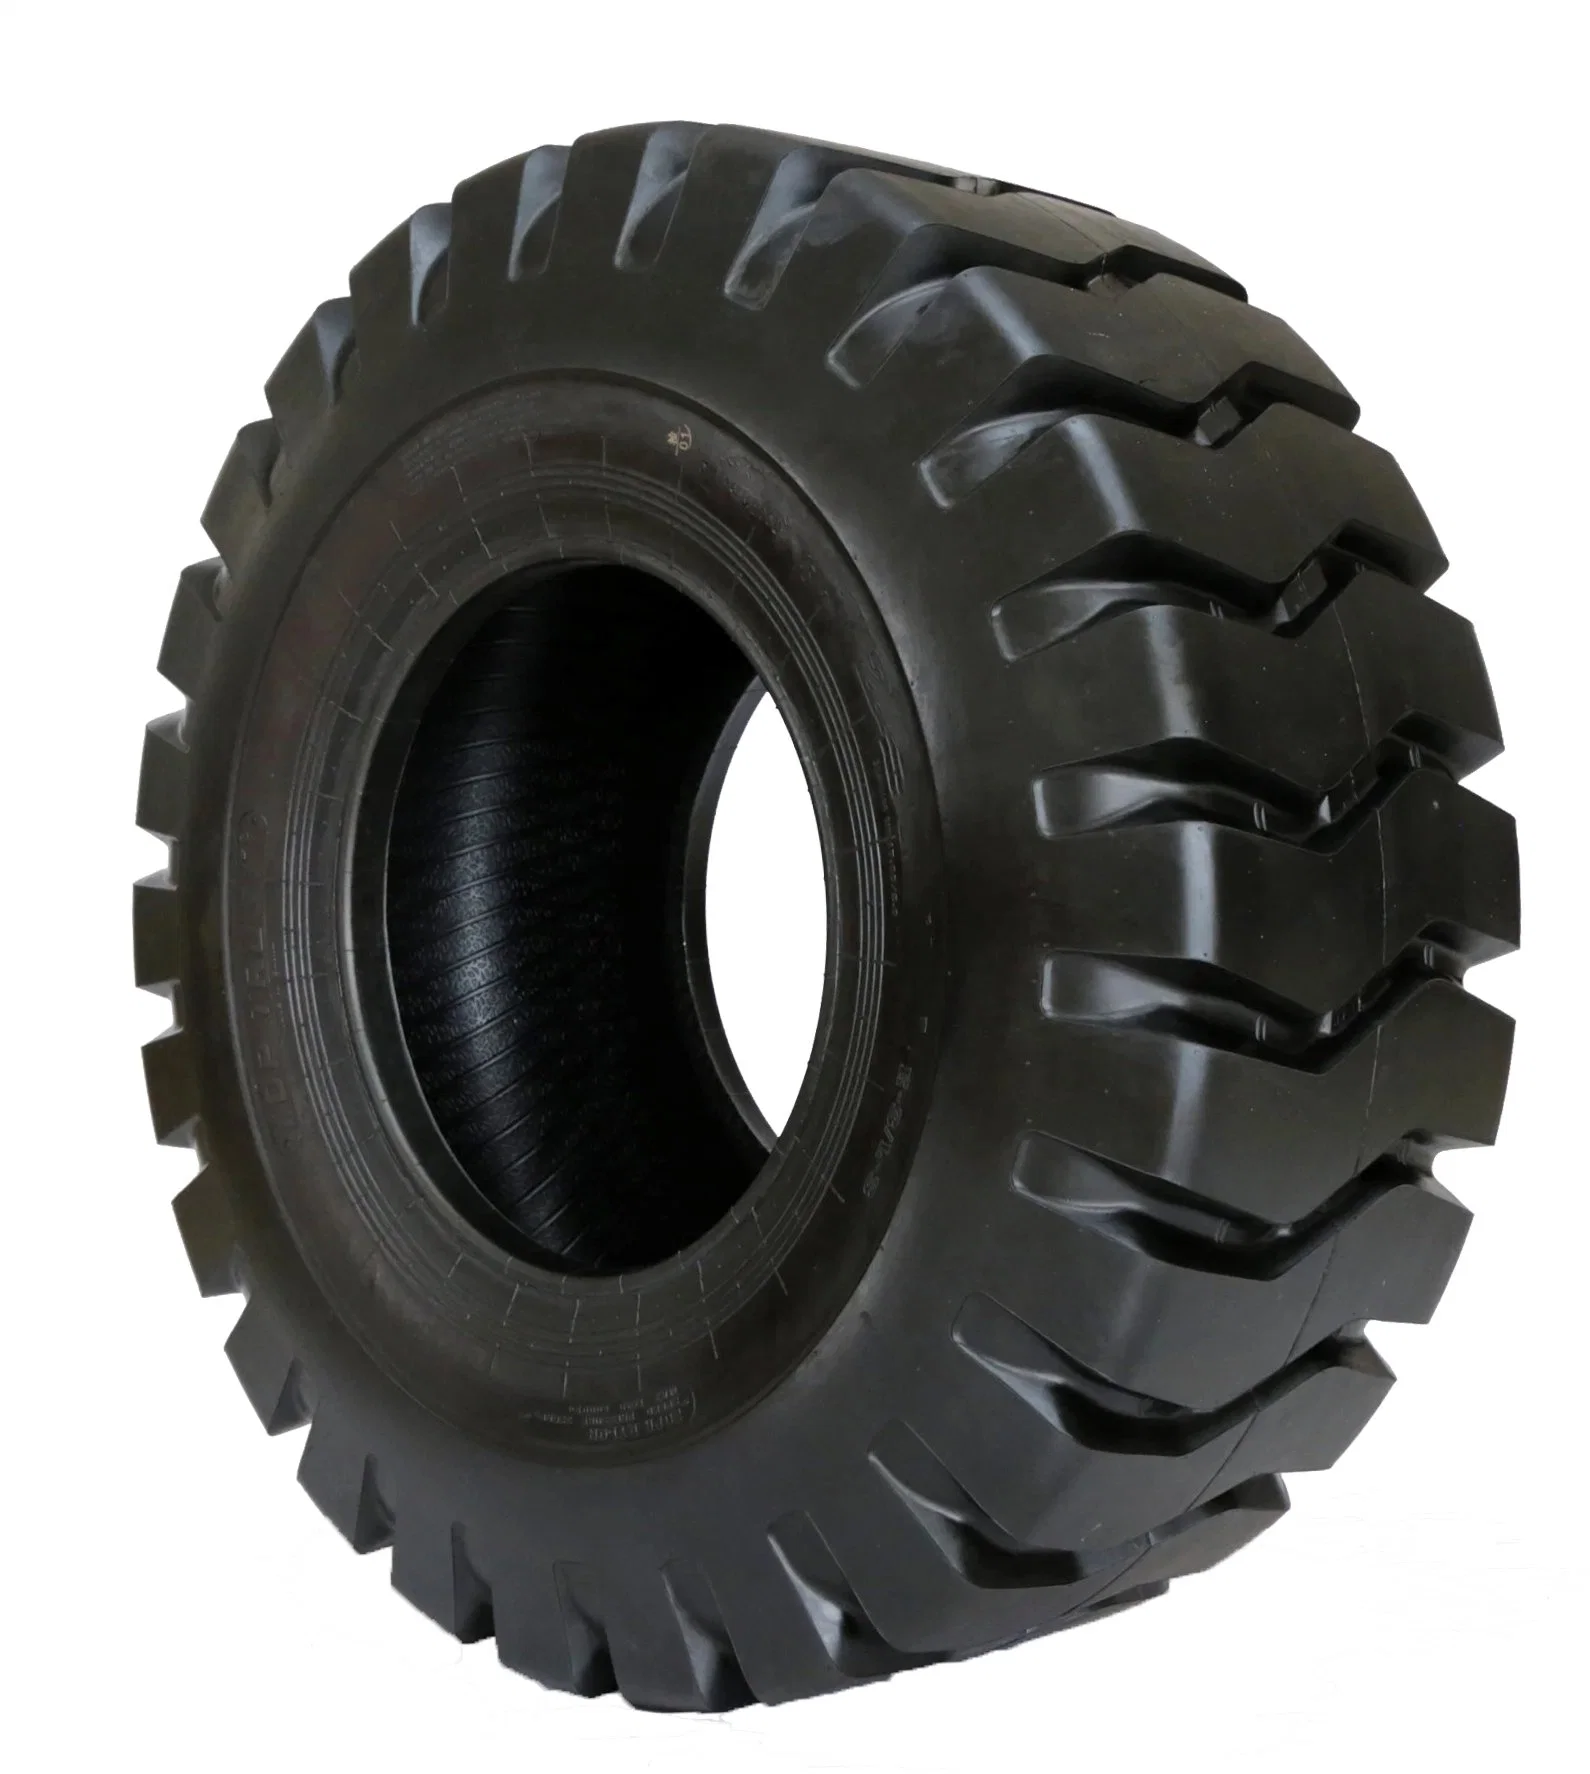 Factory Surmount Tyre L3/ E3 OTR Tire for Loader Dumper Mining Construction 20.5-25 23.5-25 16/70-24 1300-25 1400-24 1600-25